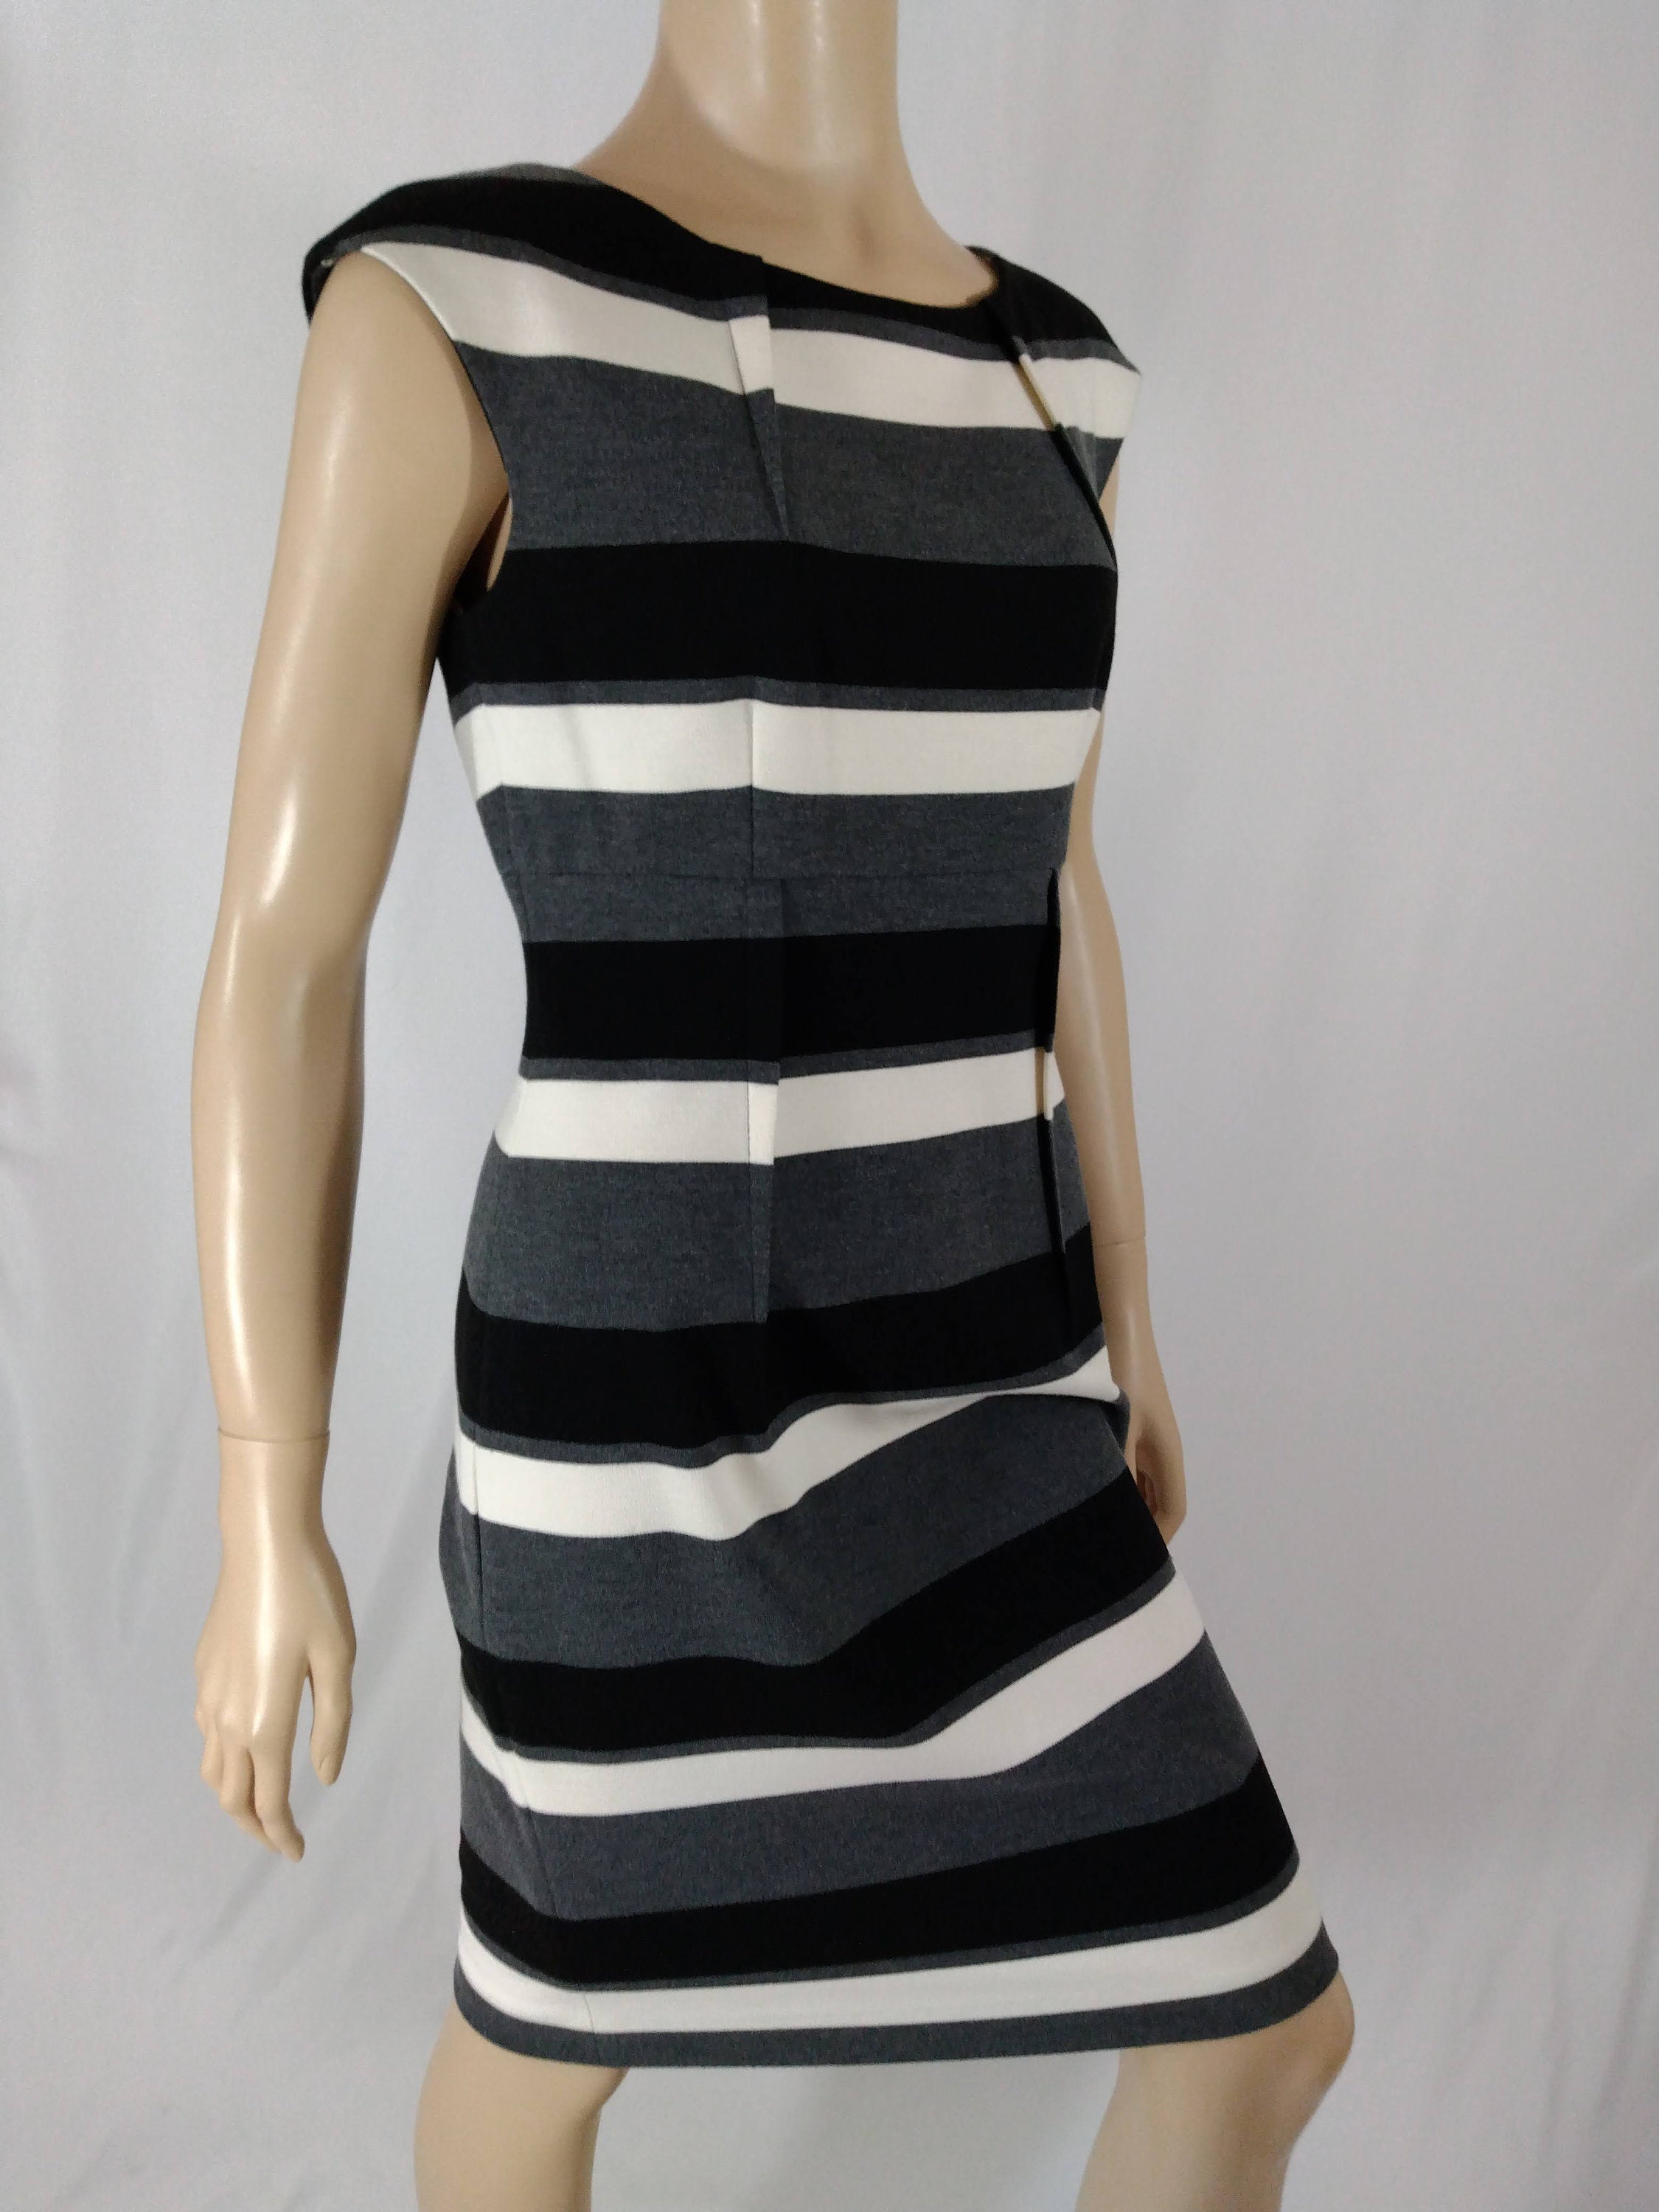 Calvin Klein Dress Sleeveless Black White Gray Striped Thick - Etsy